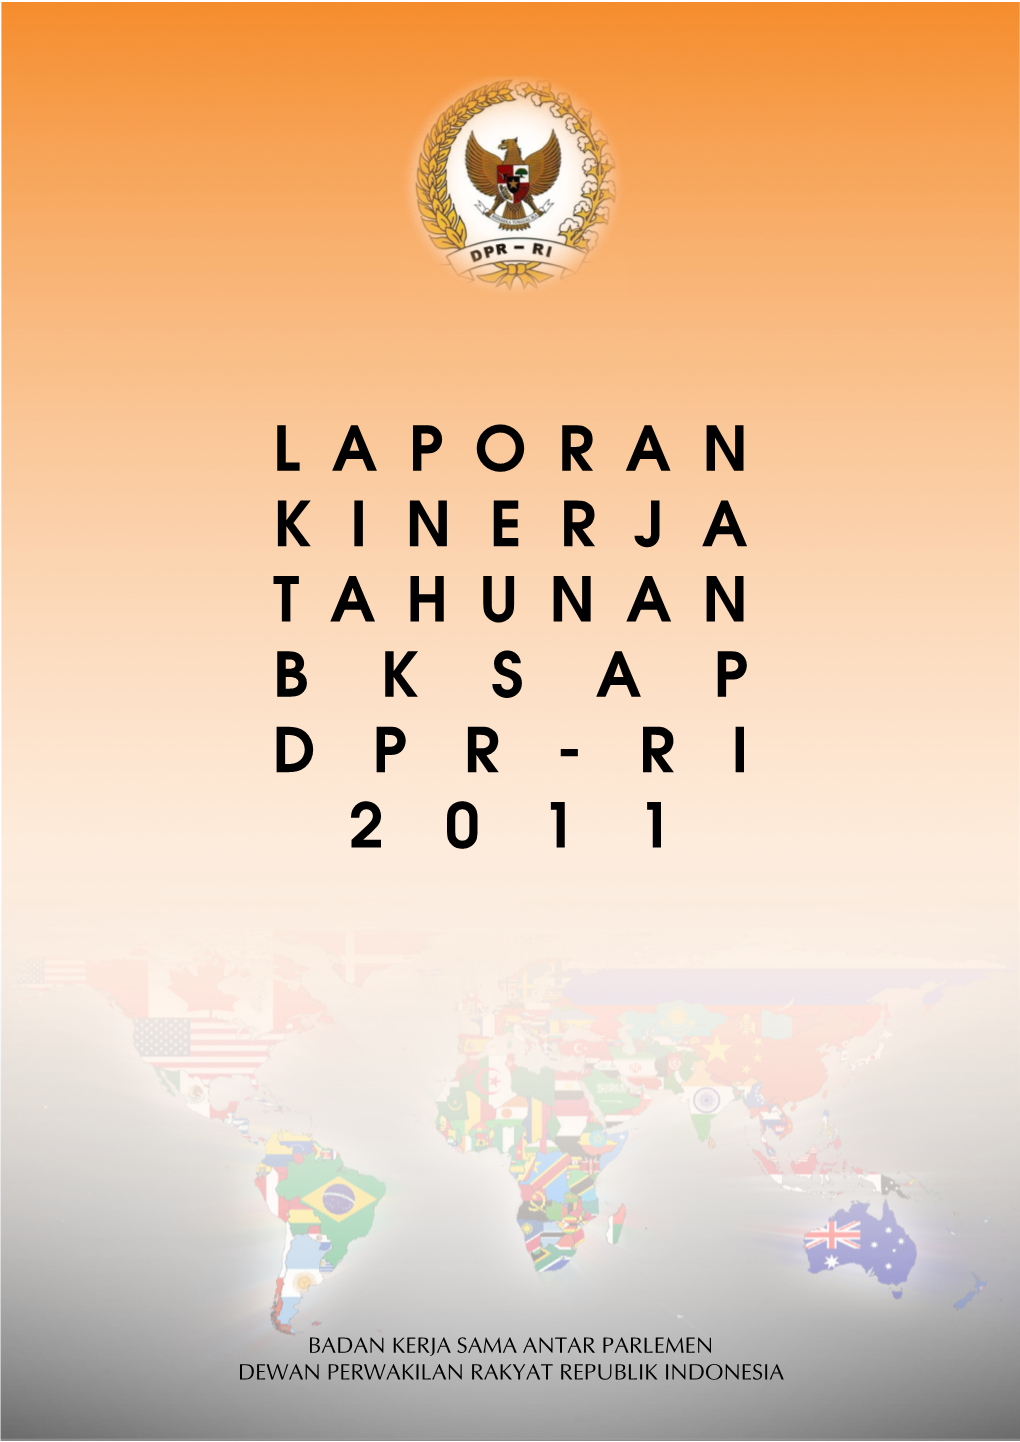 Laporan Kinerja Tahunan BKSAP DPR-RI 2011